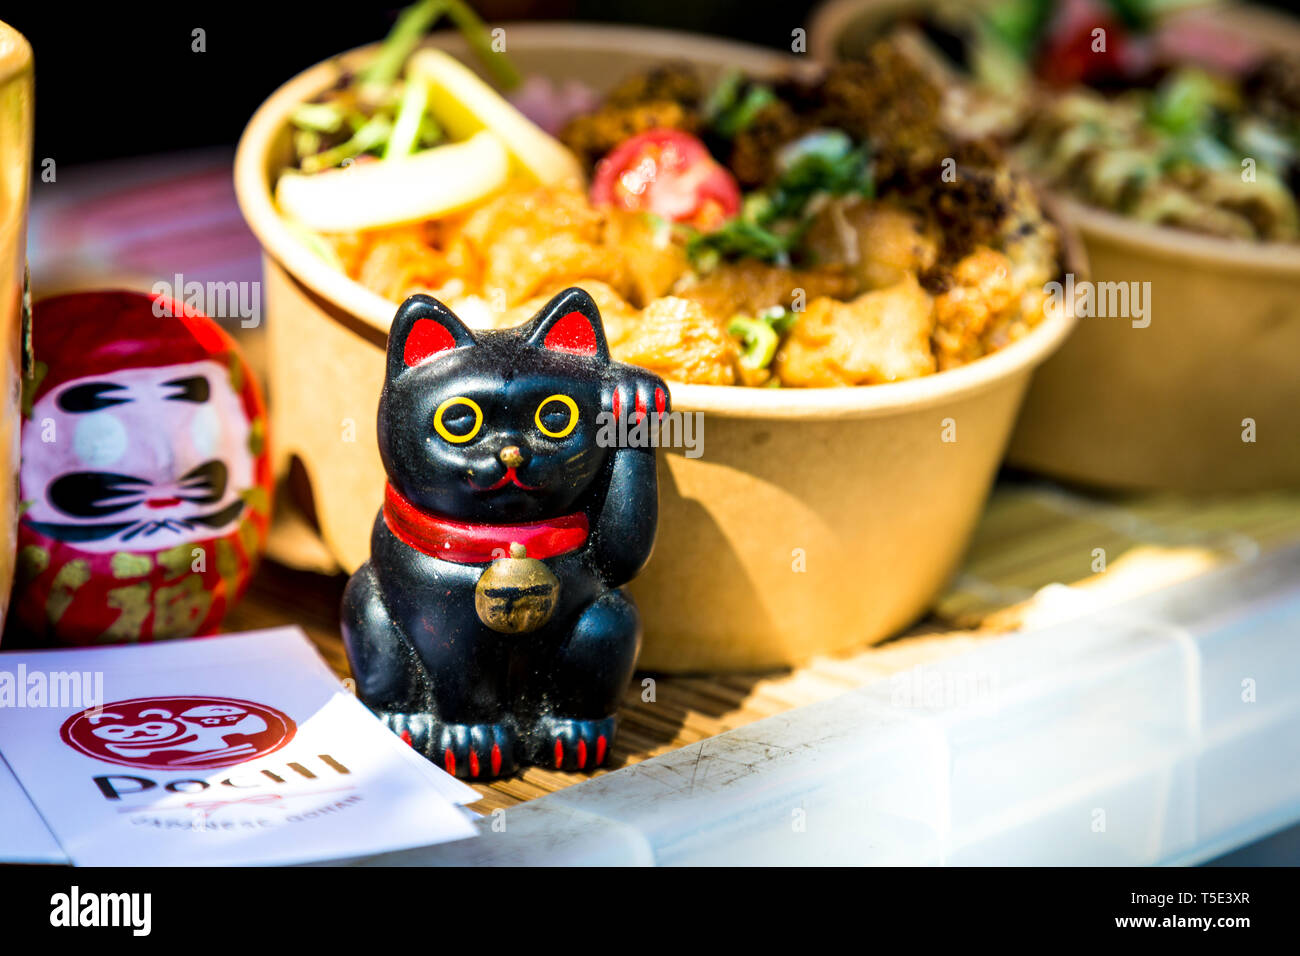 Carino il giapponese lucky cat figurine a pochi street food stallo in Victoria Park Market, London, Regno Unito Foto Stock